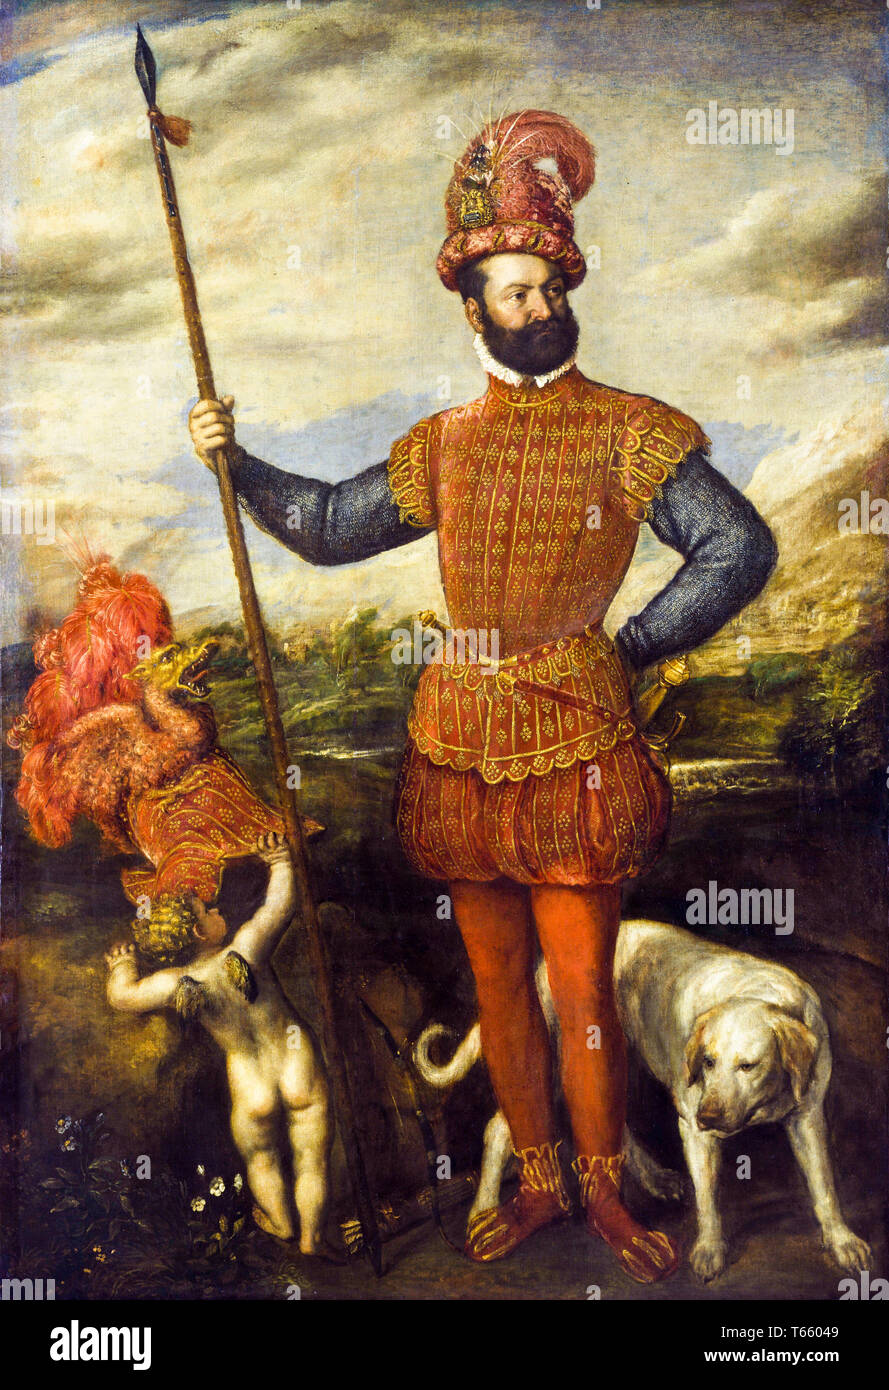 Titien, Tiziano Vecellio, Homme en costume militaire, peinture à l'huile sur toile, vers 1550 Banque D'Images